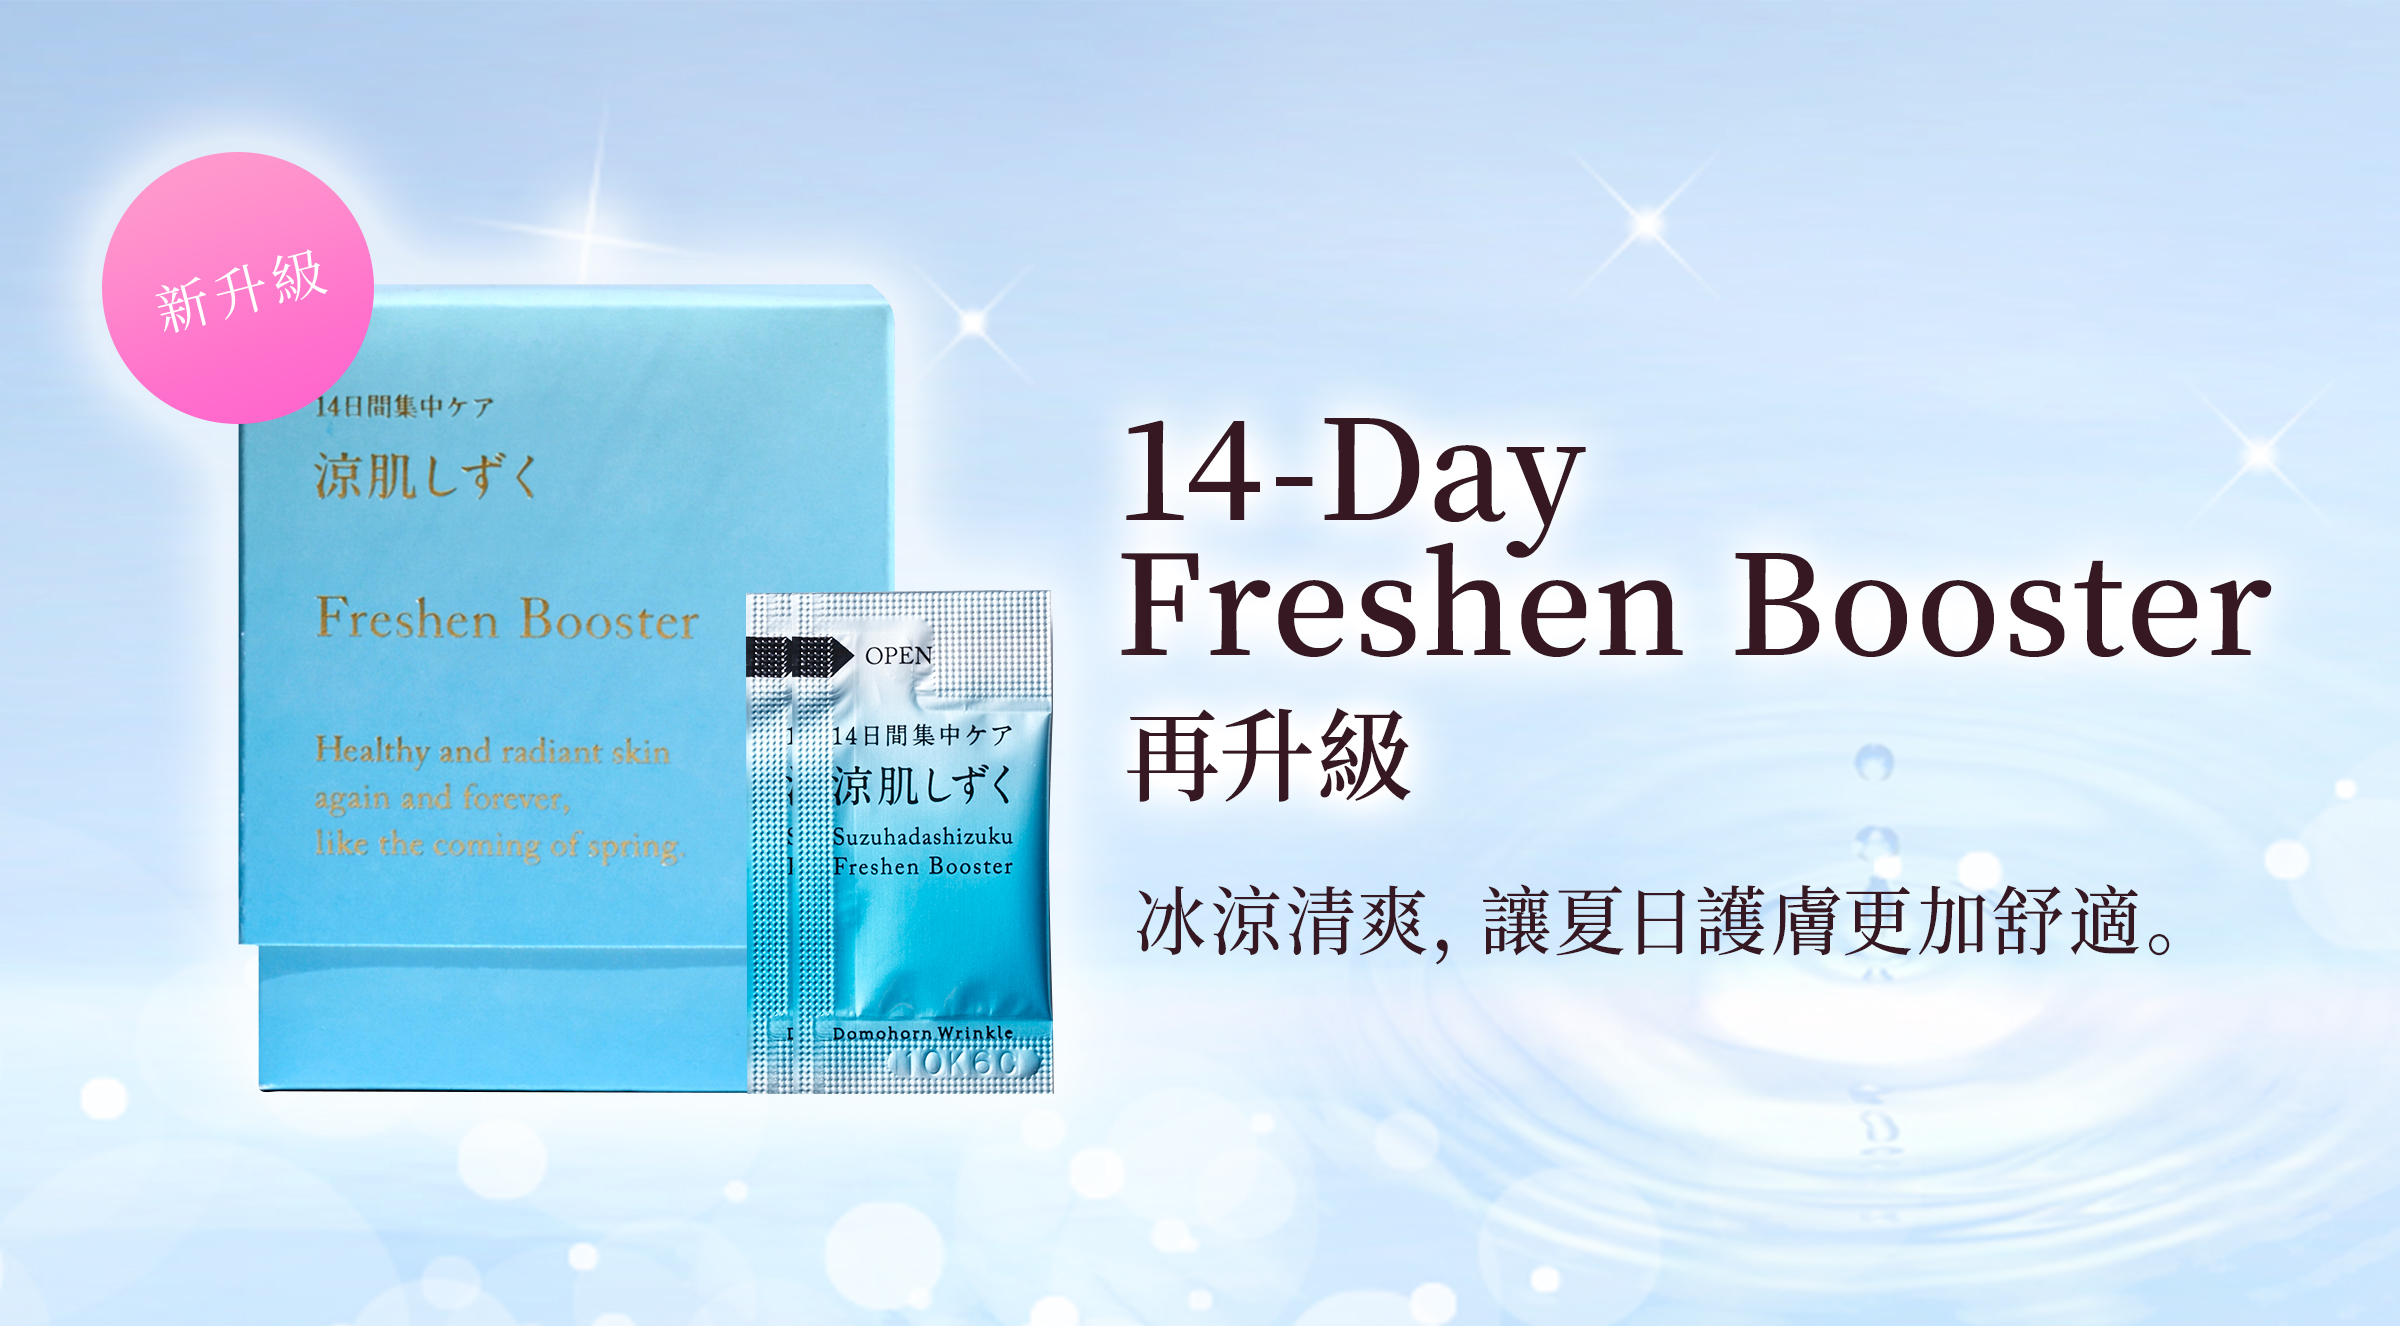 14-Day Freshen Booster 冰涼清爽，讓夏日護膚更加舒適。